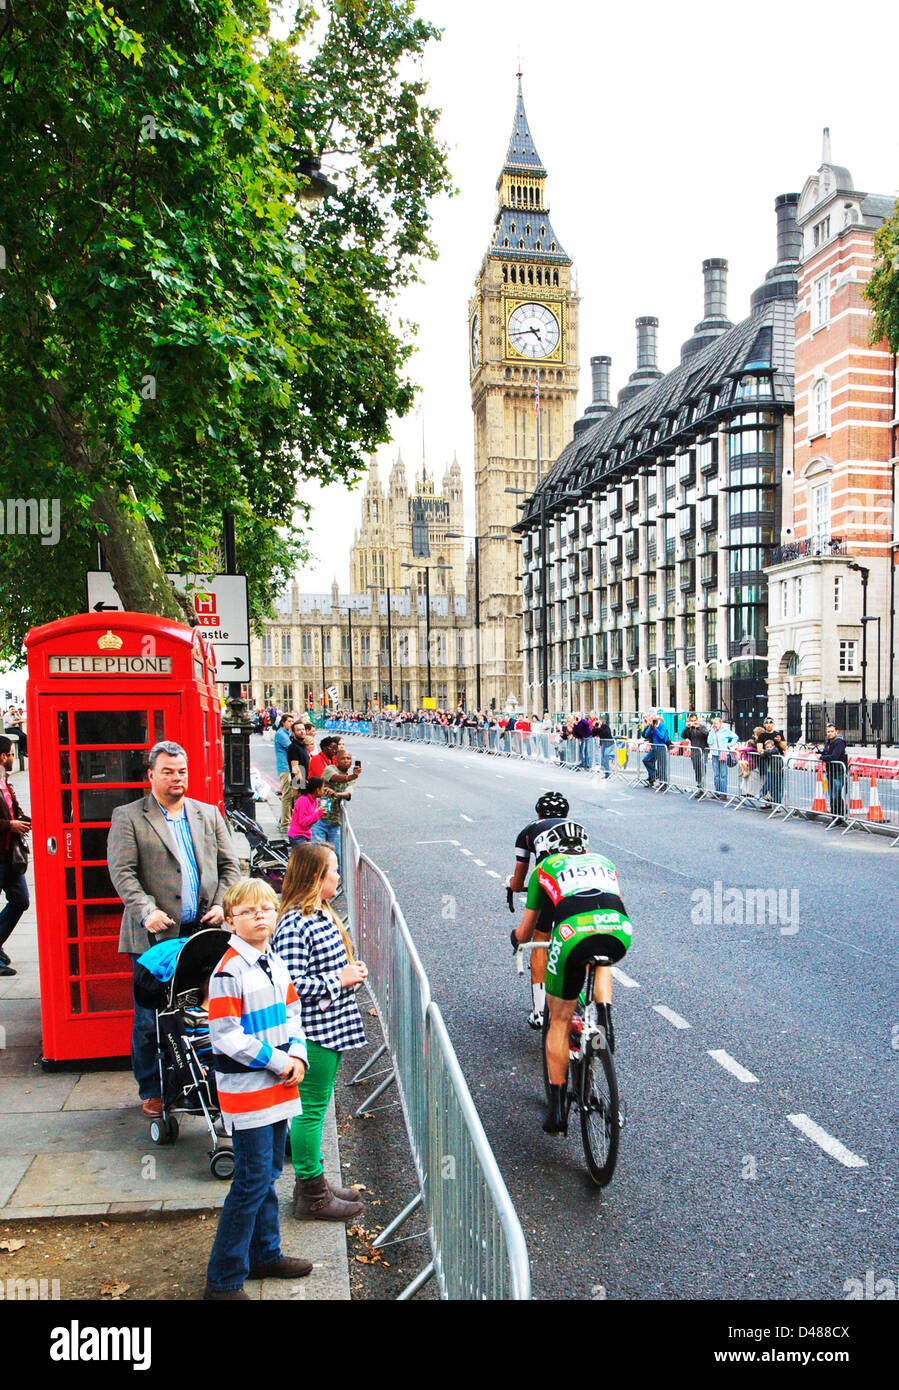 Radsport-Event in London mit Big Ben im Hintergrund Stockfoto